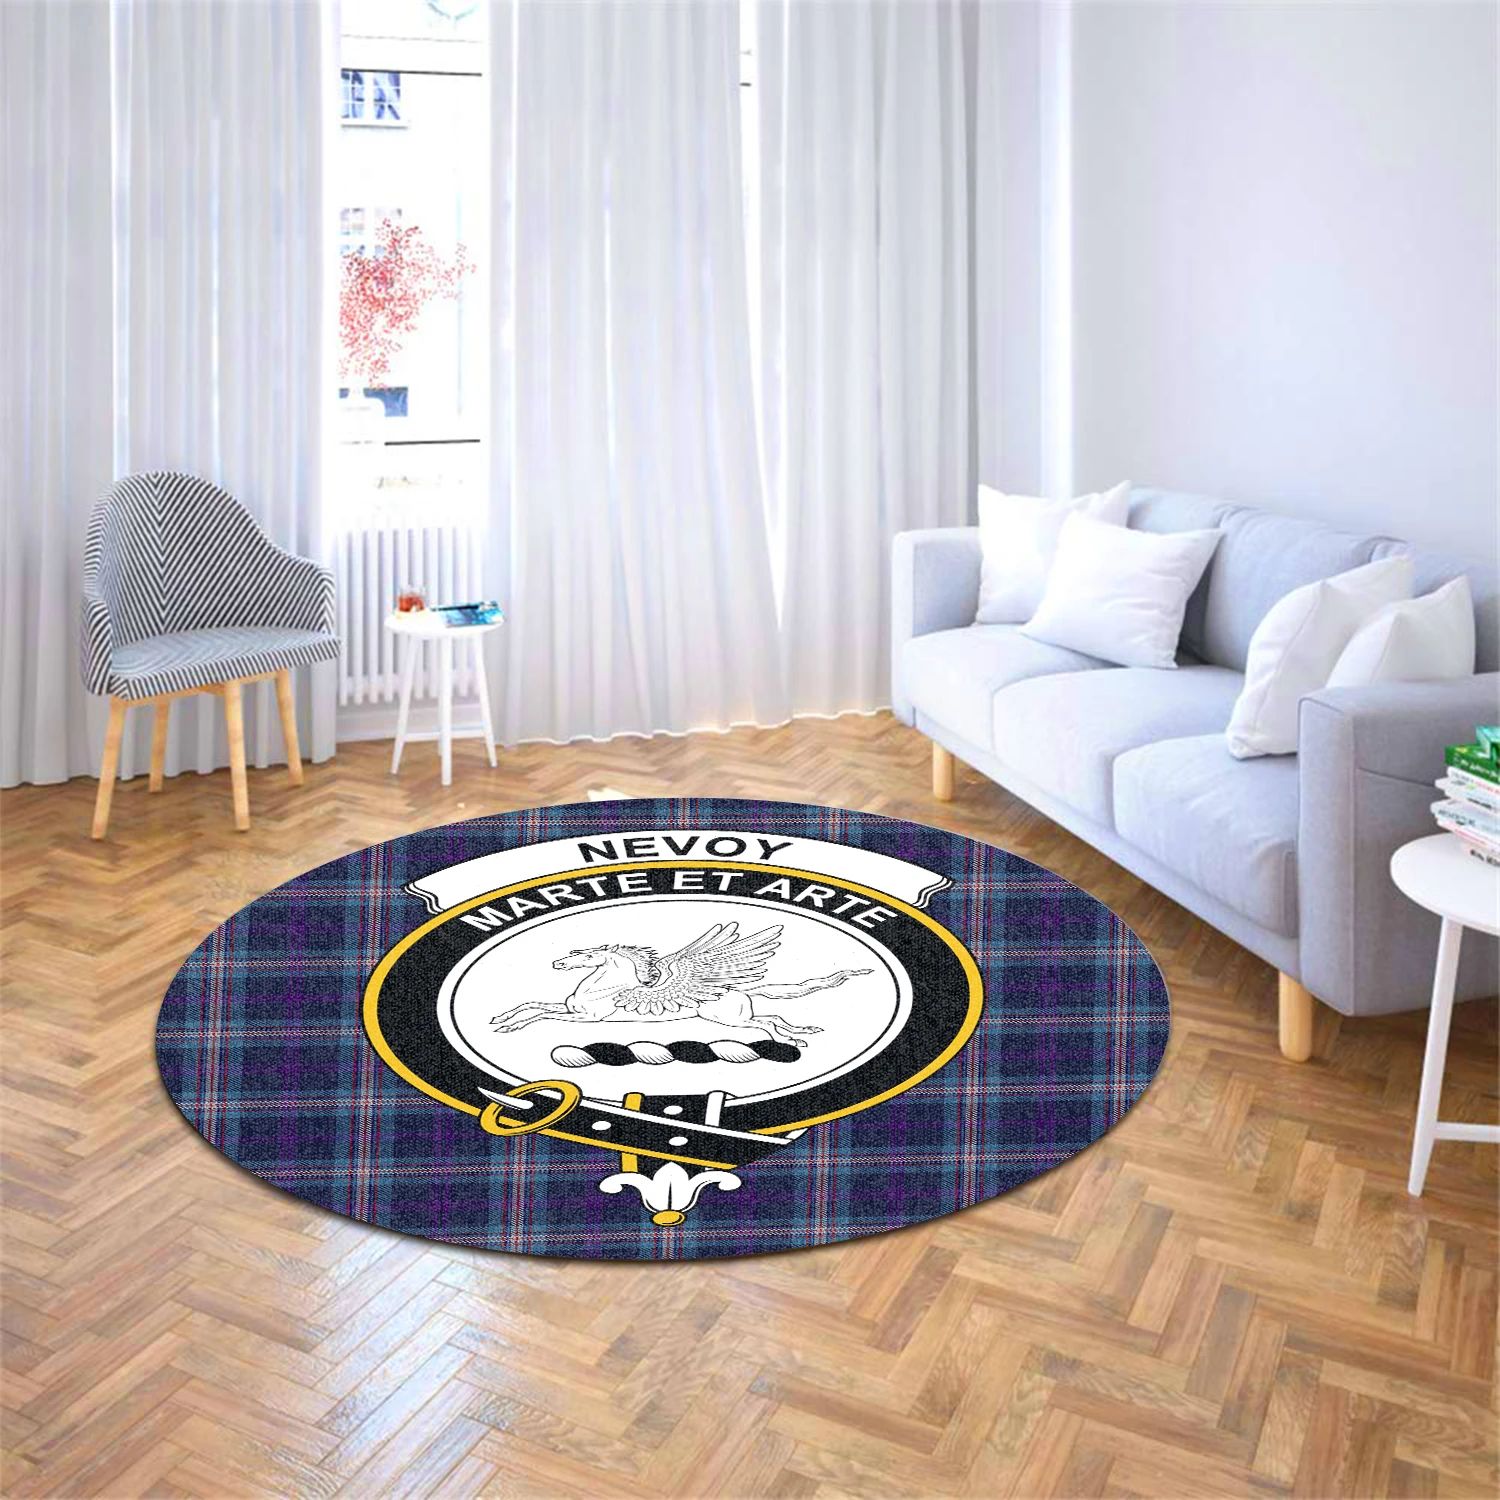 Scottish Tartan Nevoy Clan Round Rug Crest Style